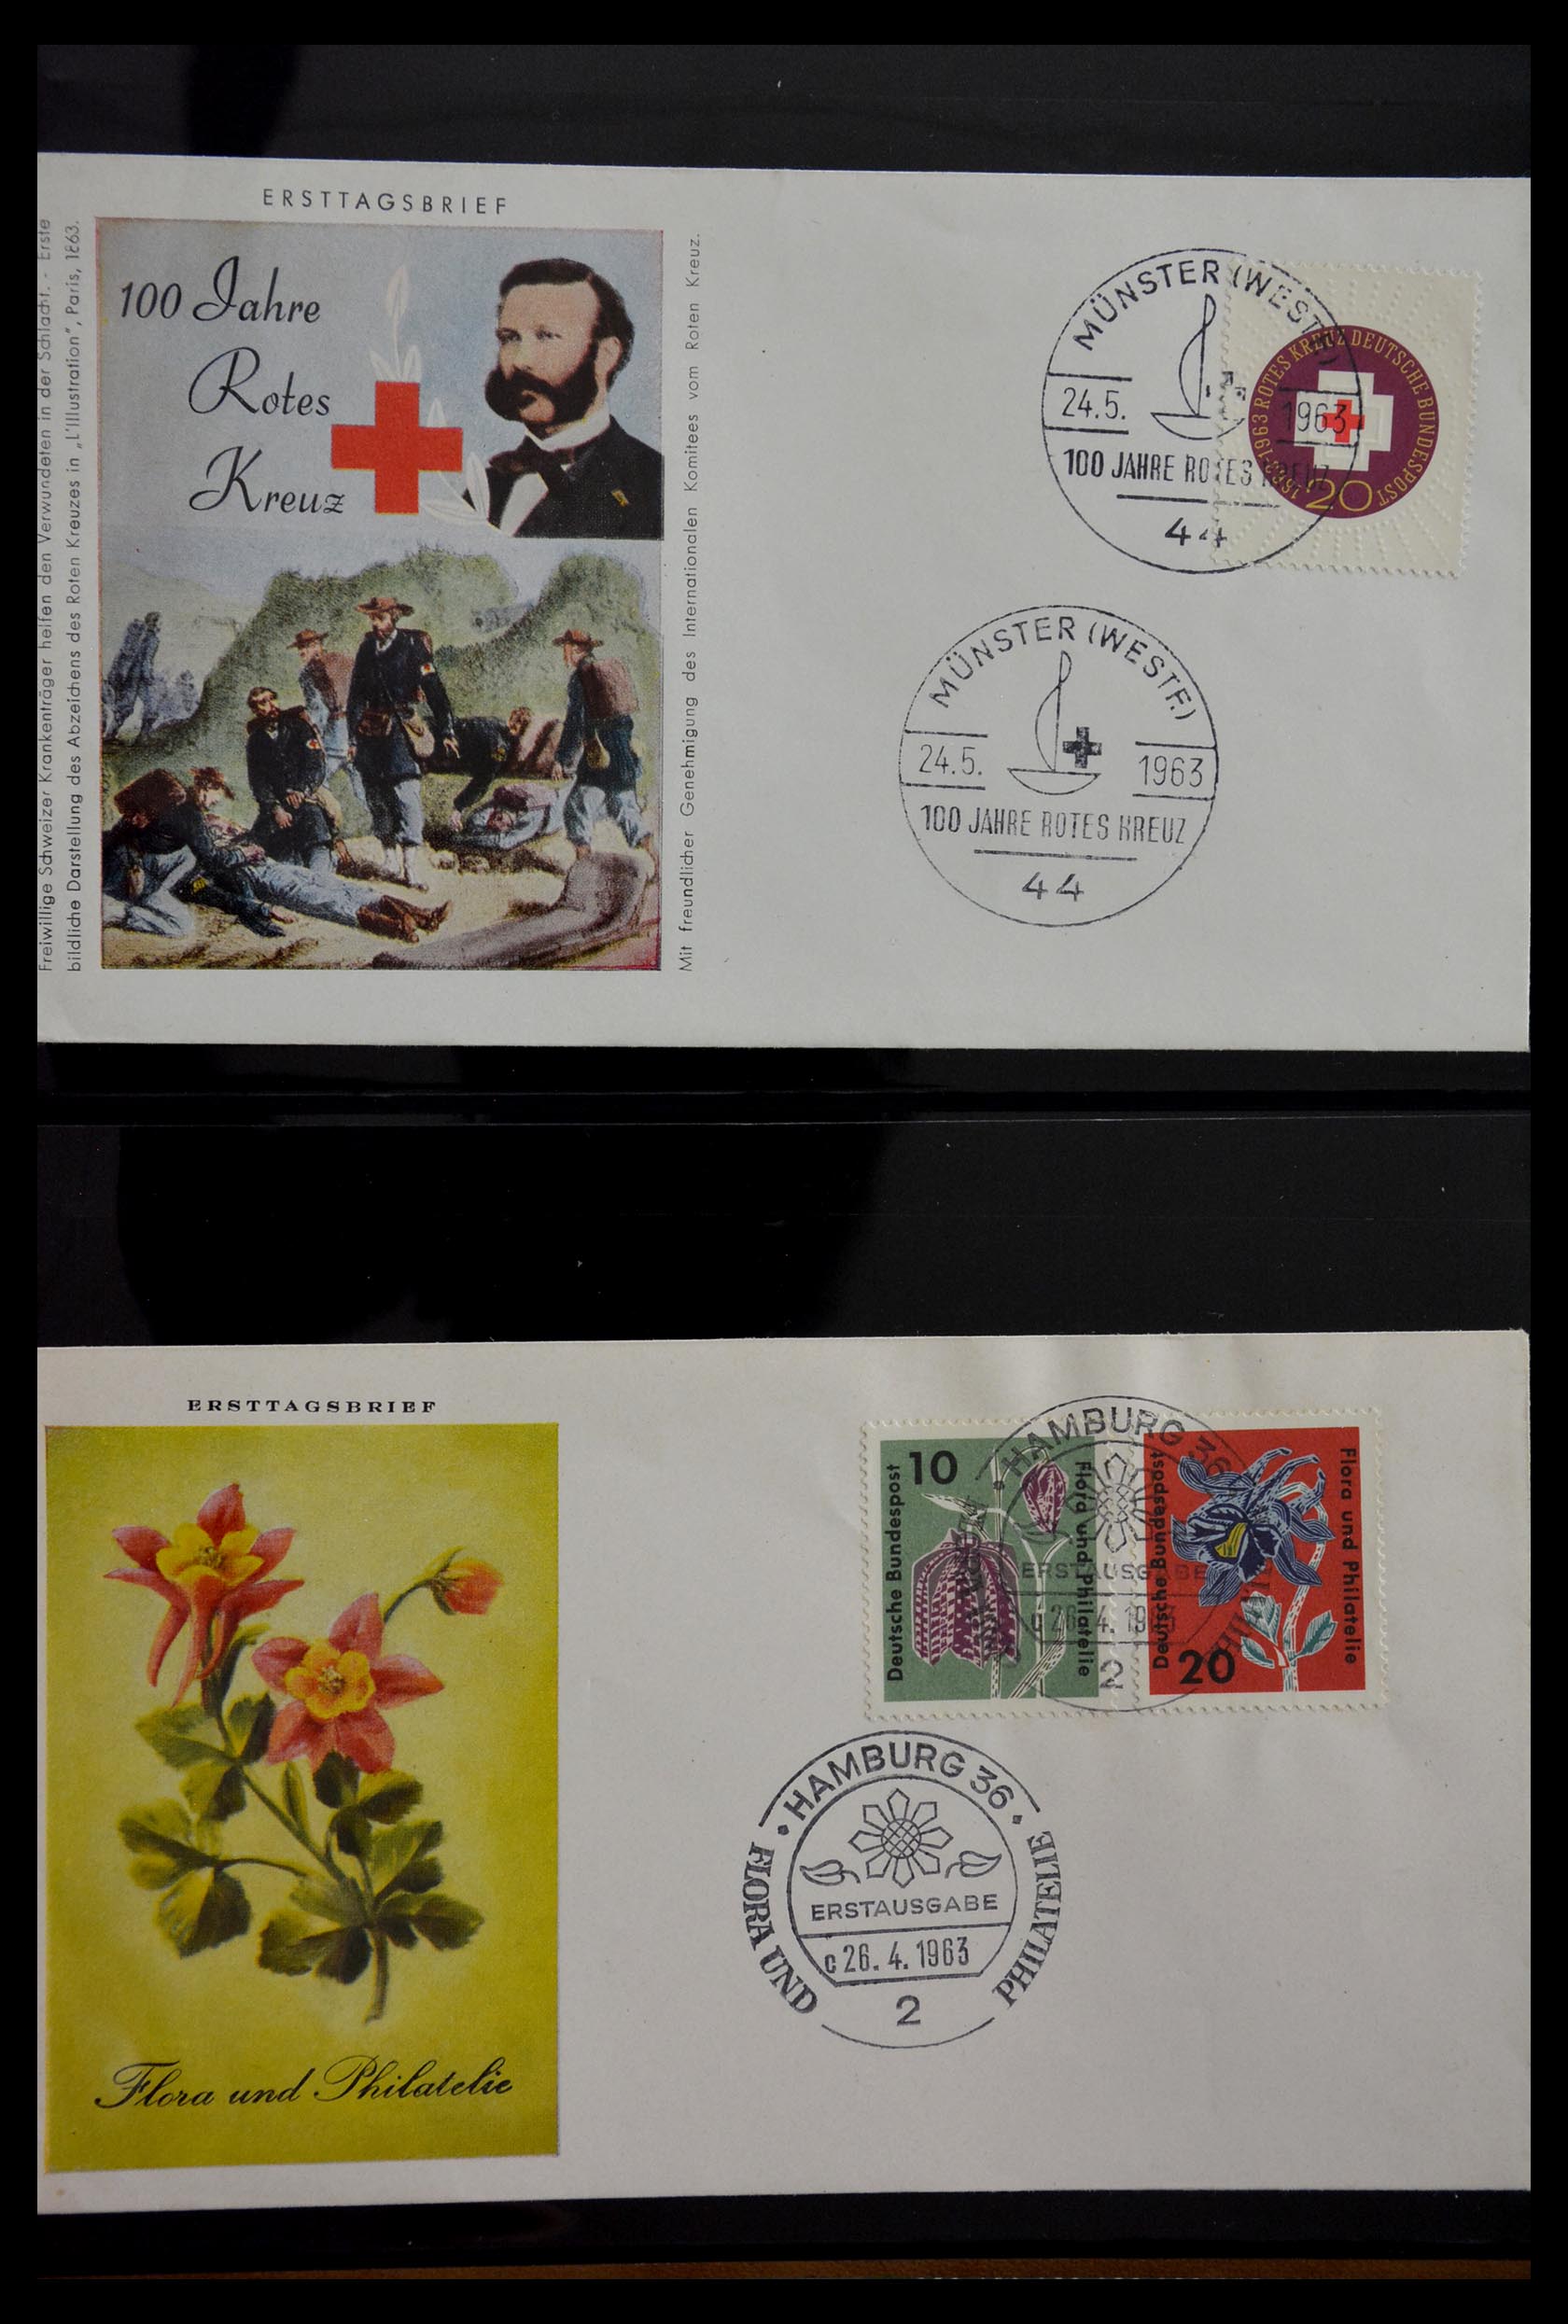 29382 026 - 29382 Duitsland brieven en FDC's 1936-1965.